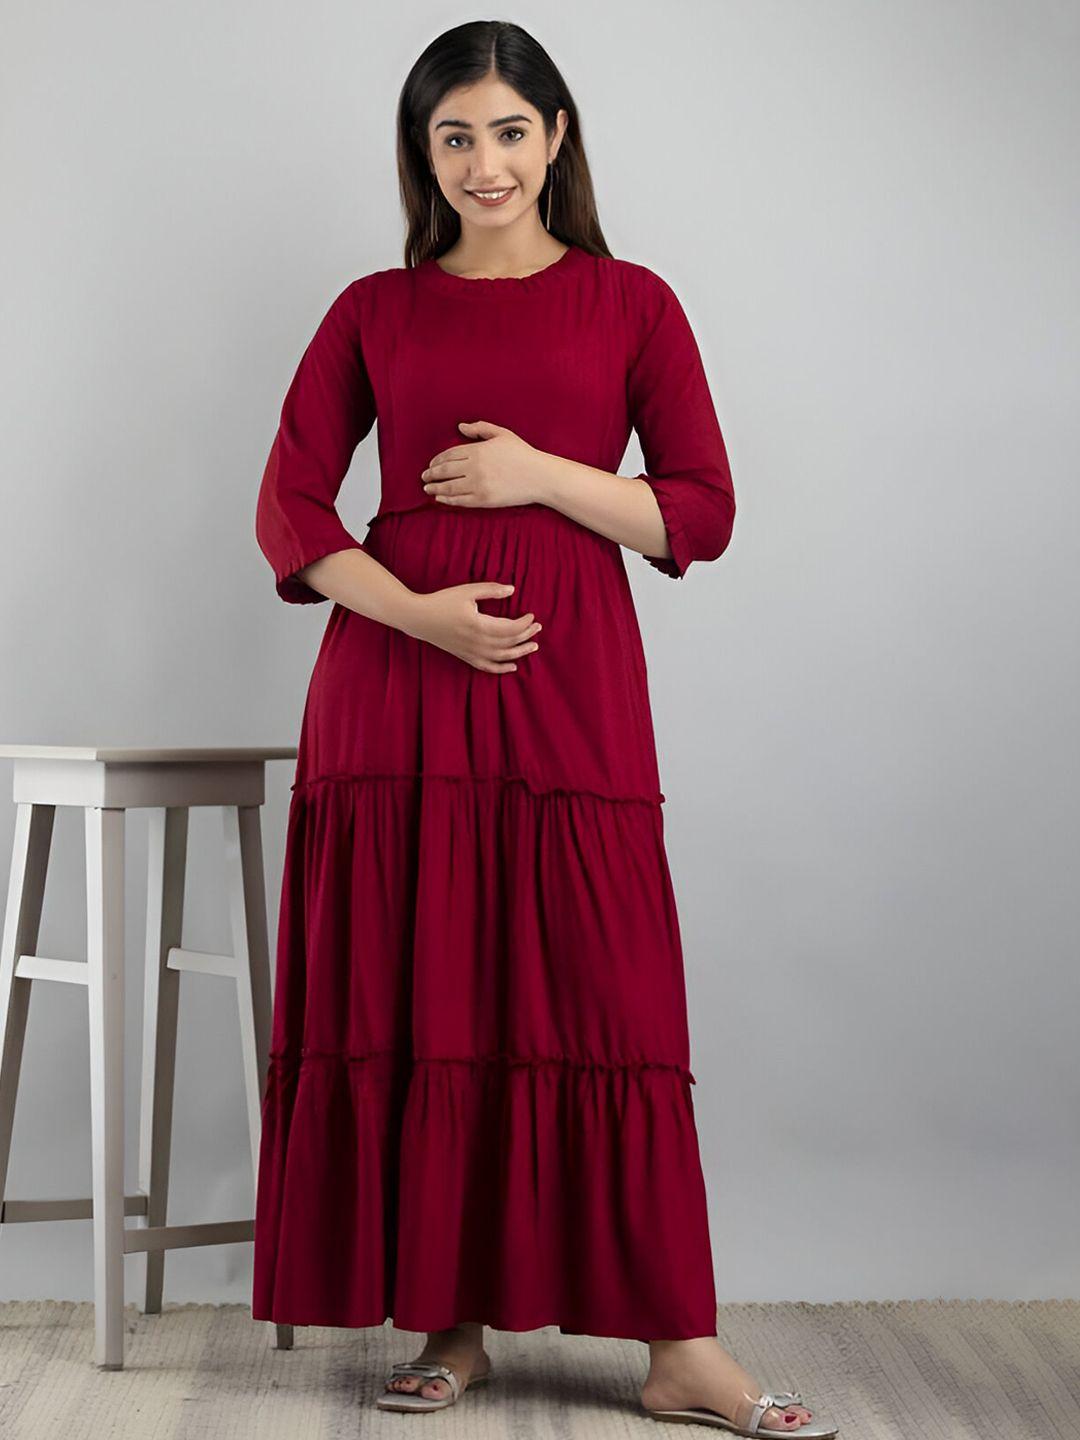 subh laxmi maternity maxi dress